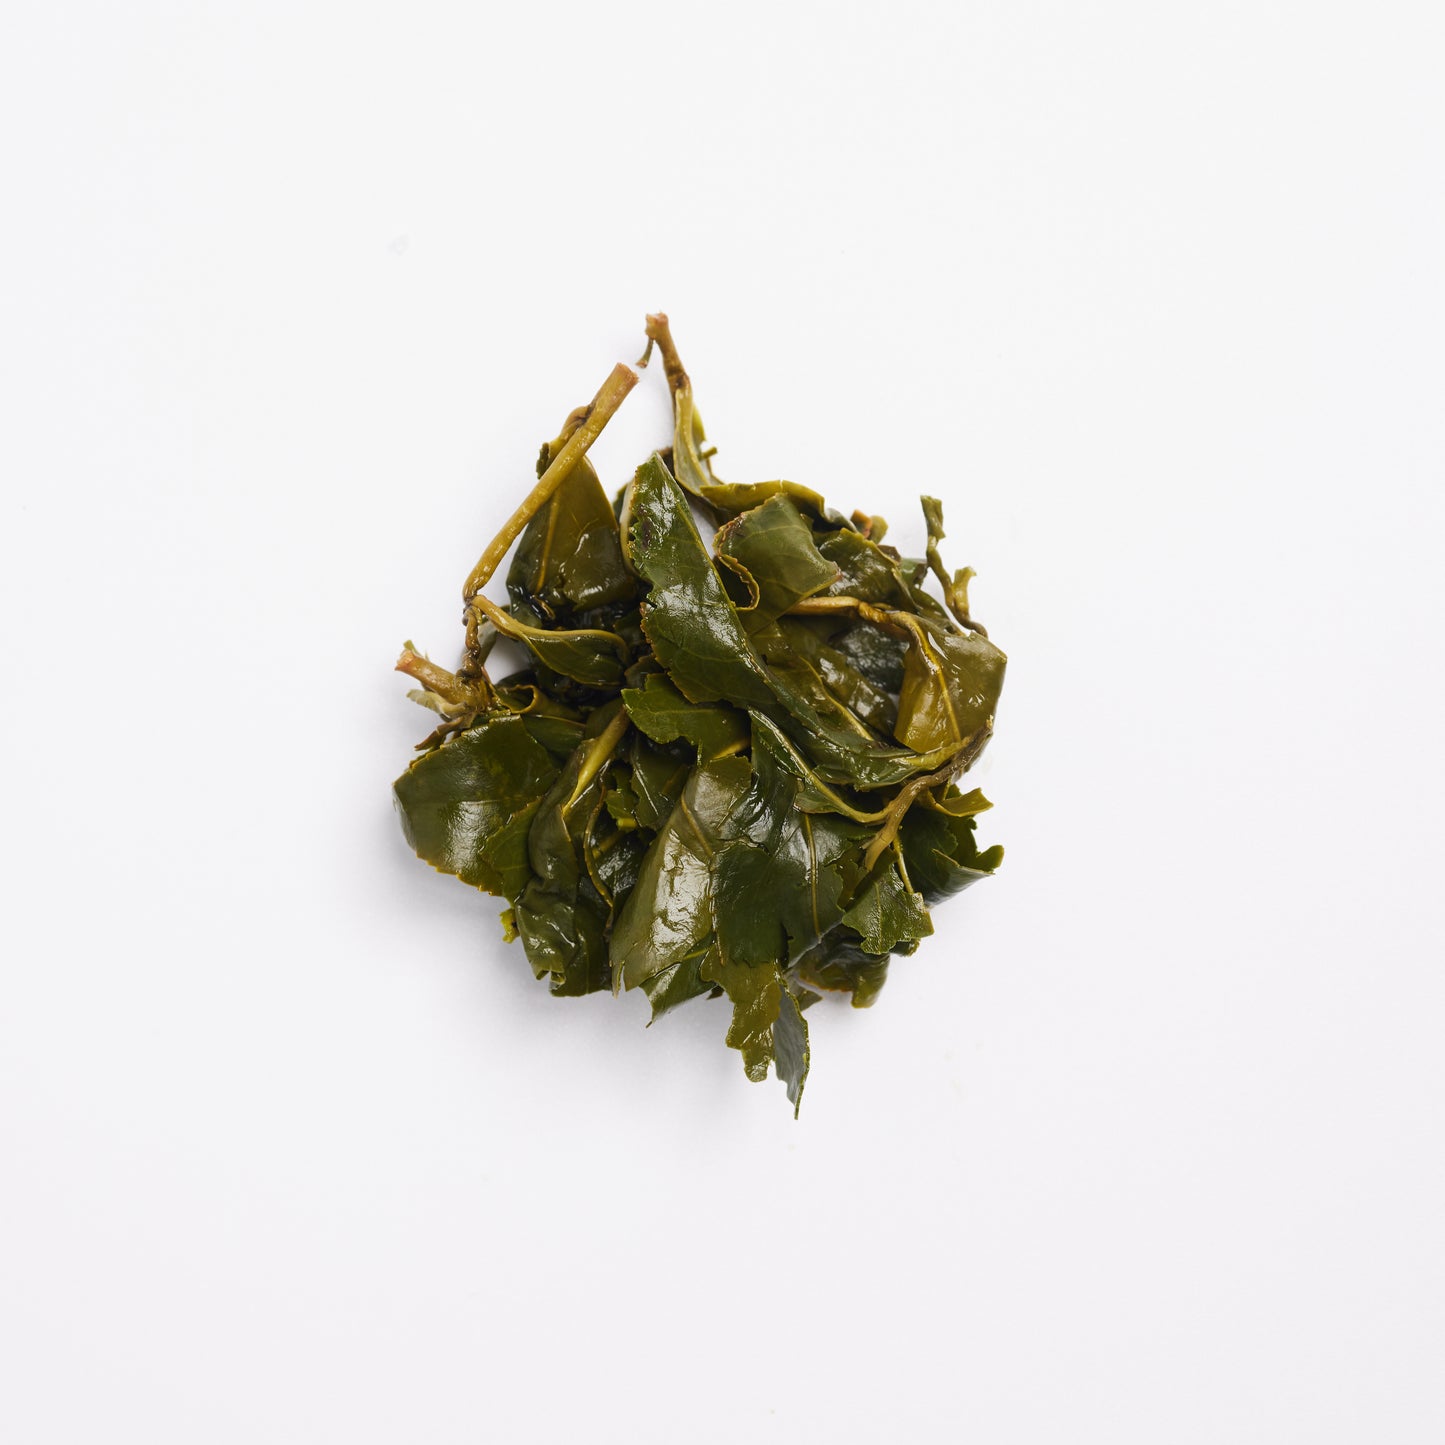 Li Shan (High Mountain Oolong Tea)